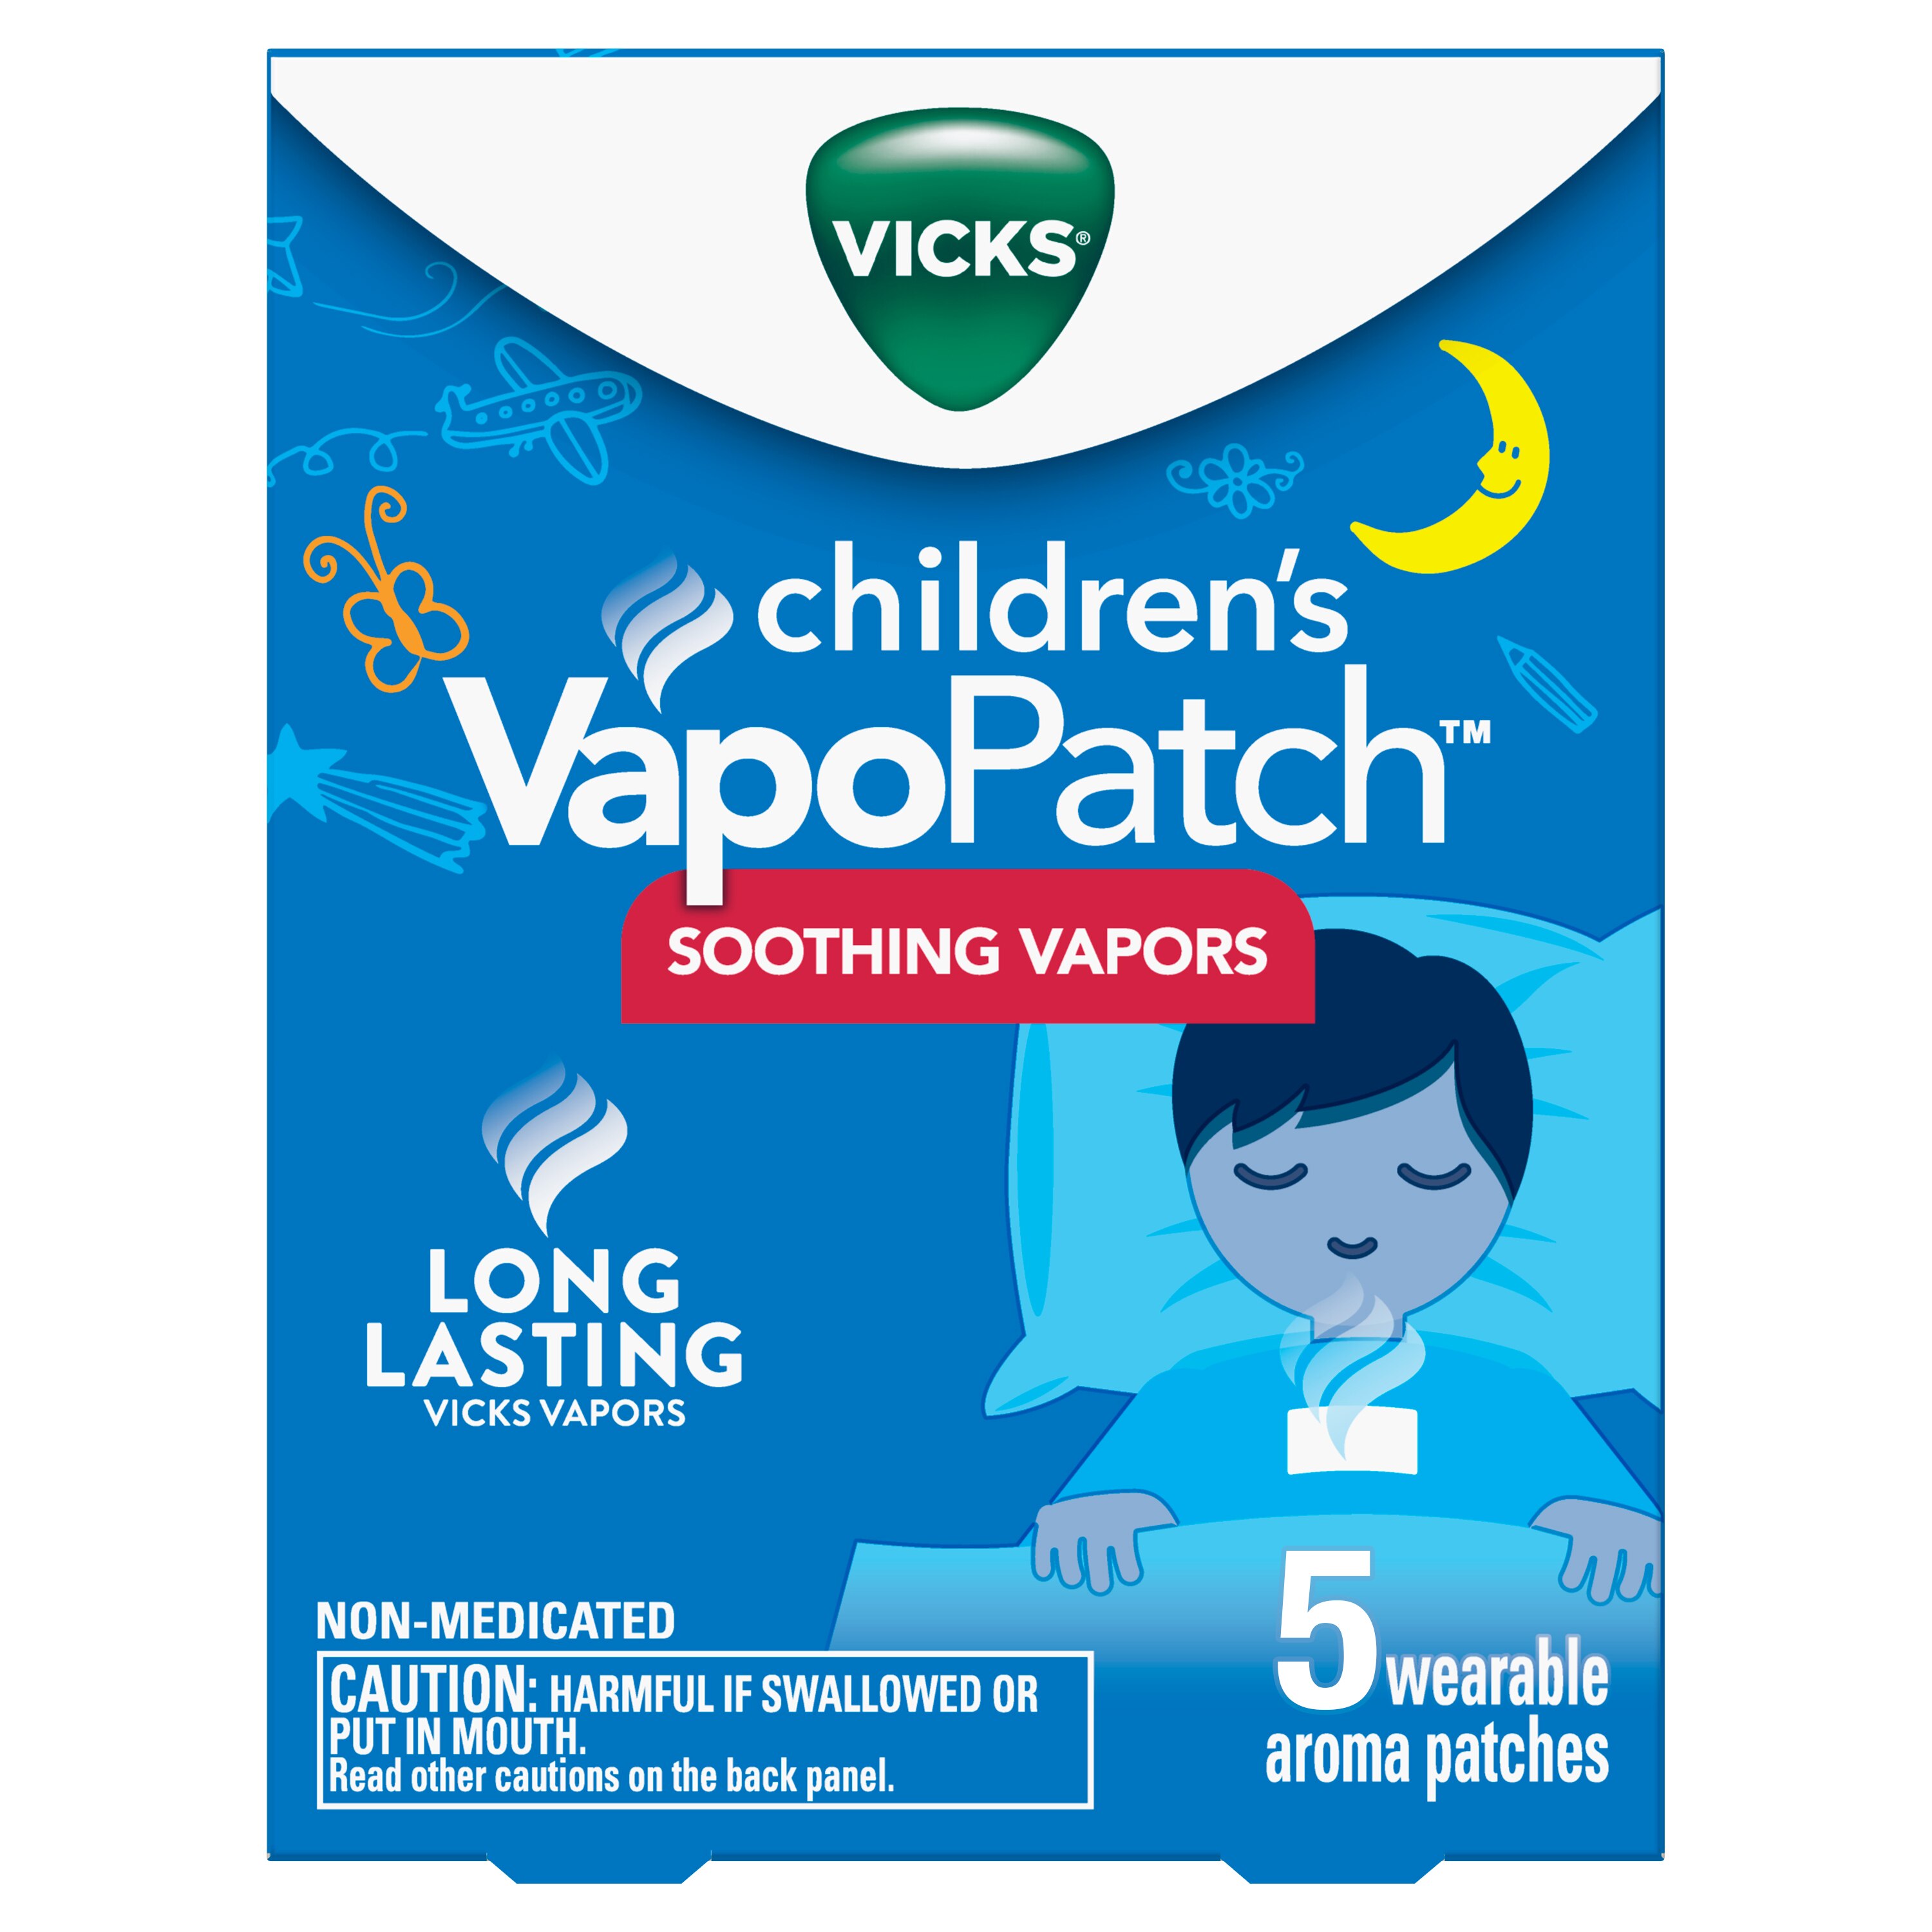 Vicks VapoPatch - Parches con vapores calmantes Vicks duraderos, para niños mayores de 6 años, 5 u.